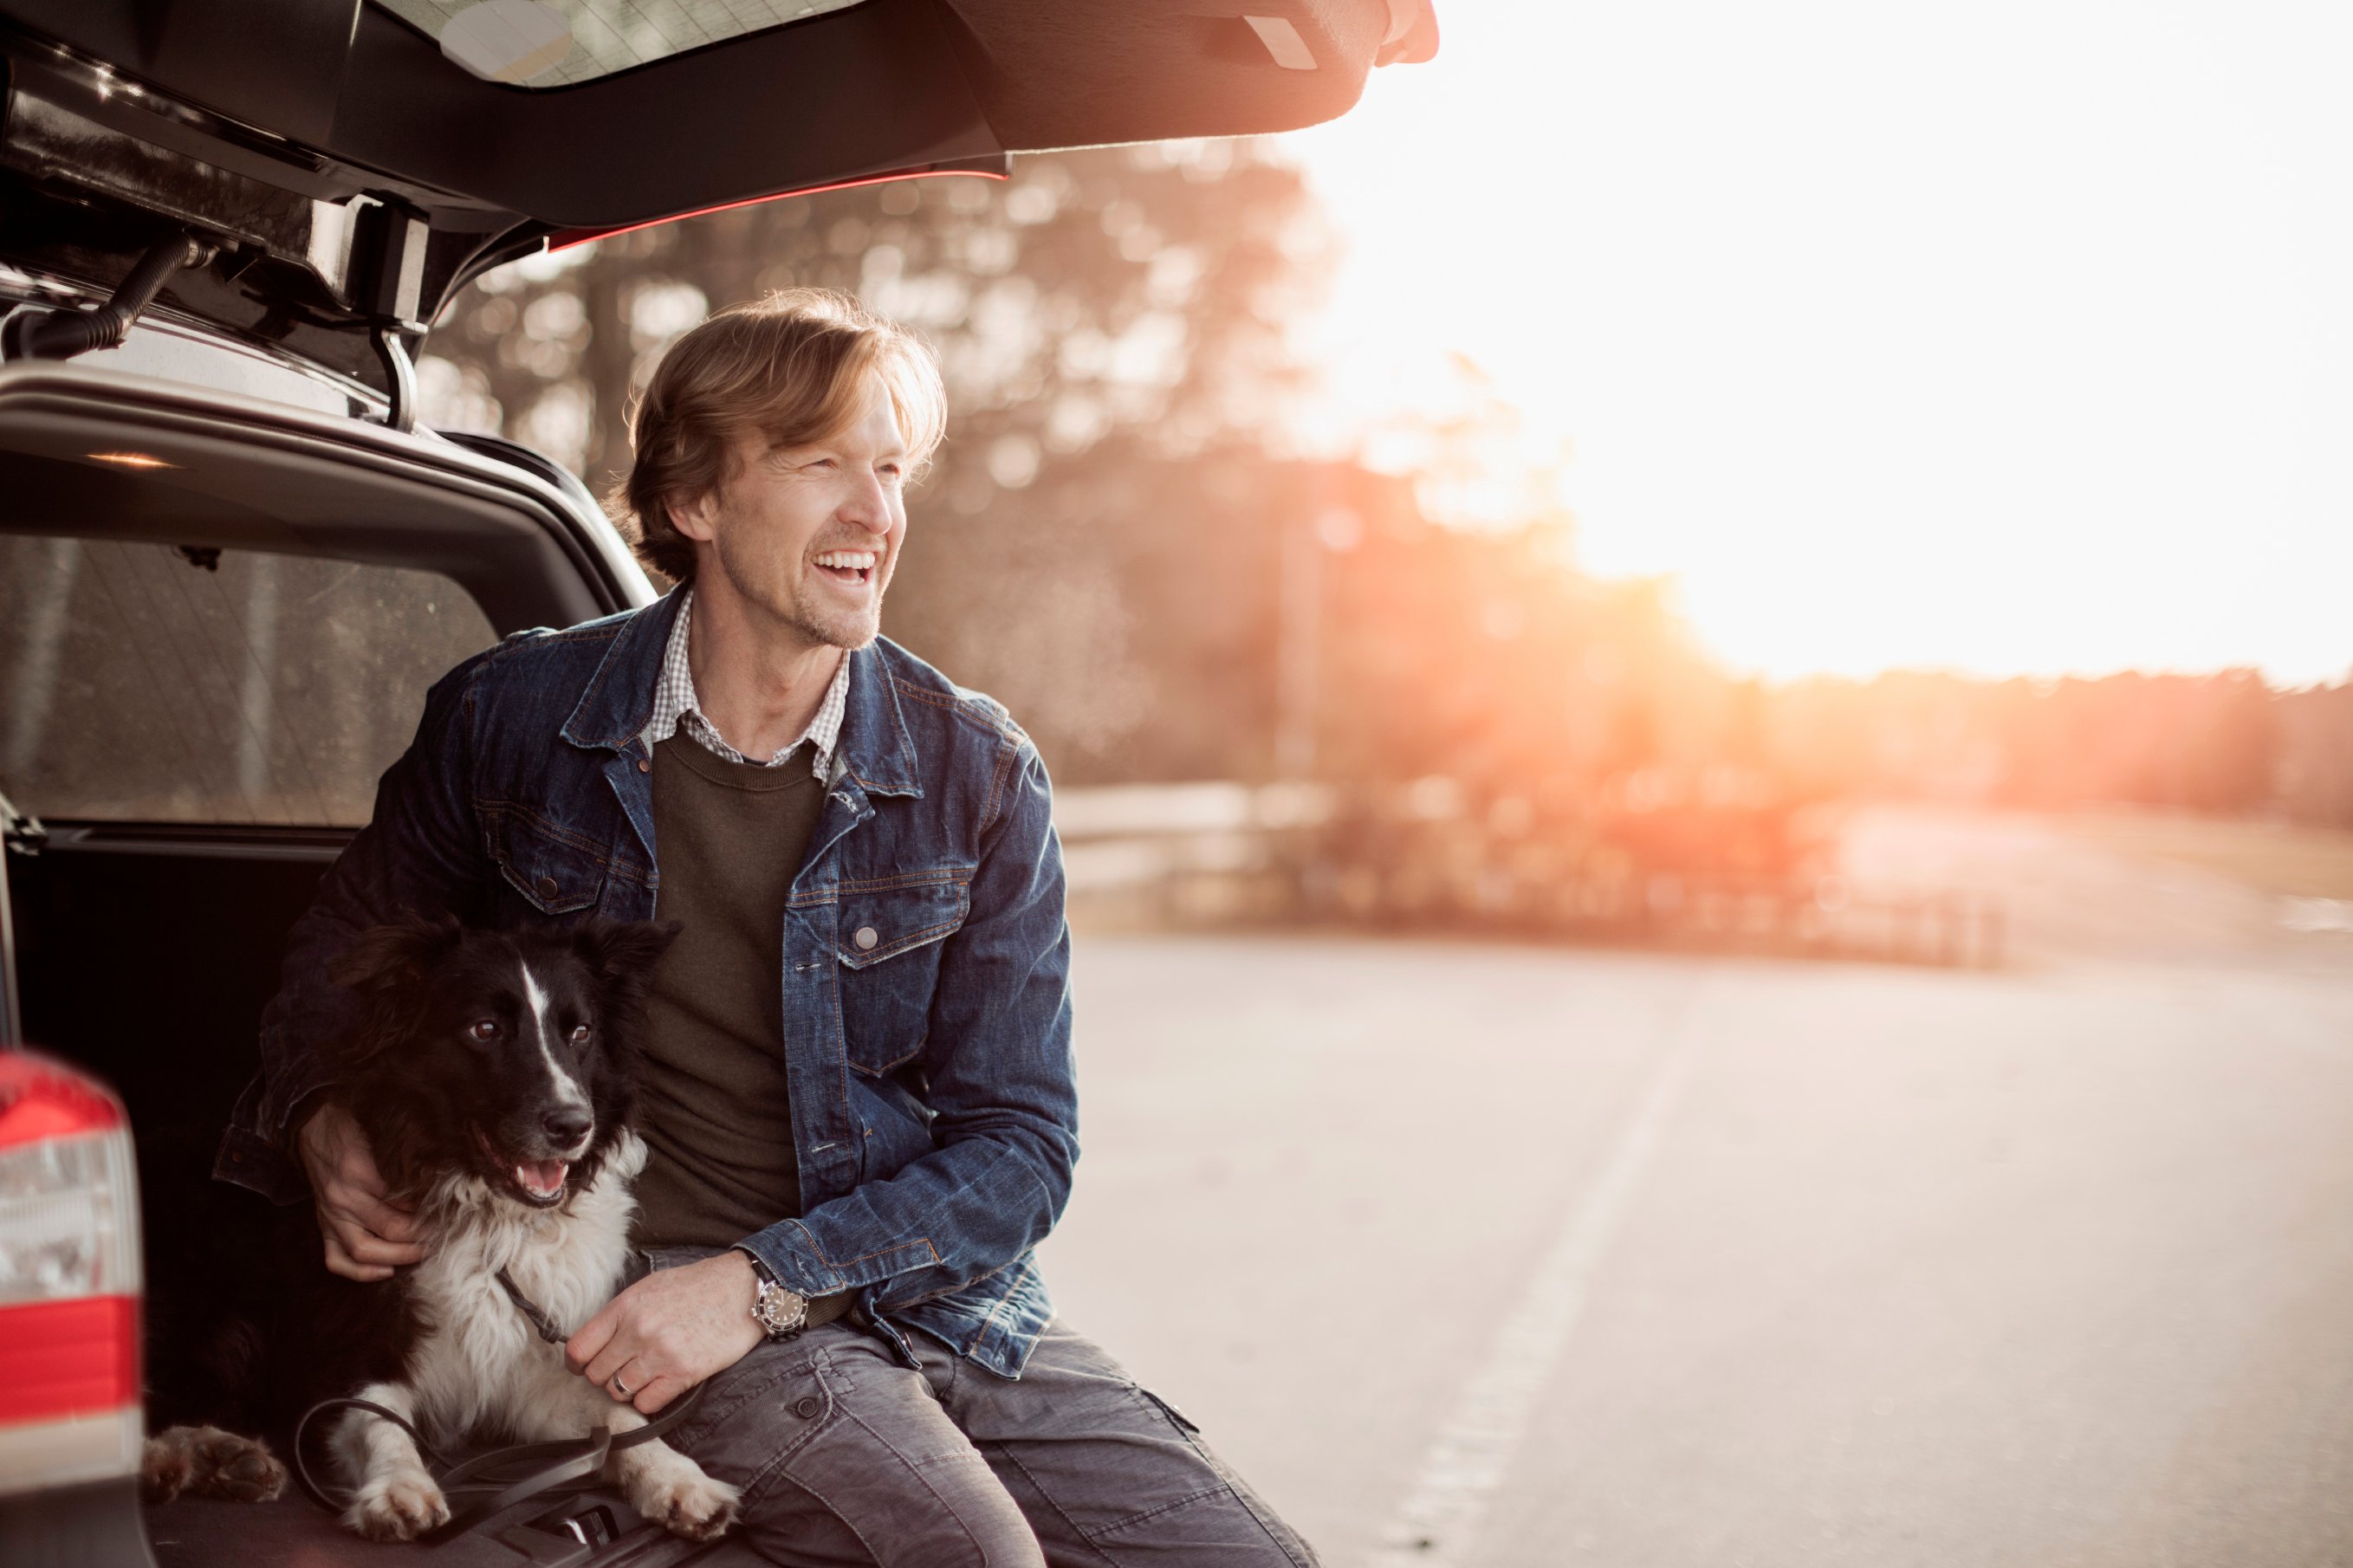 Mann og hund i bil